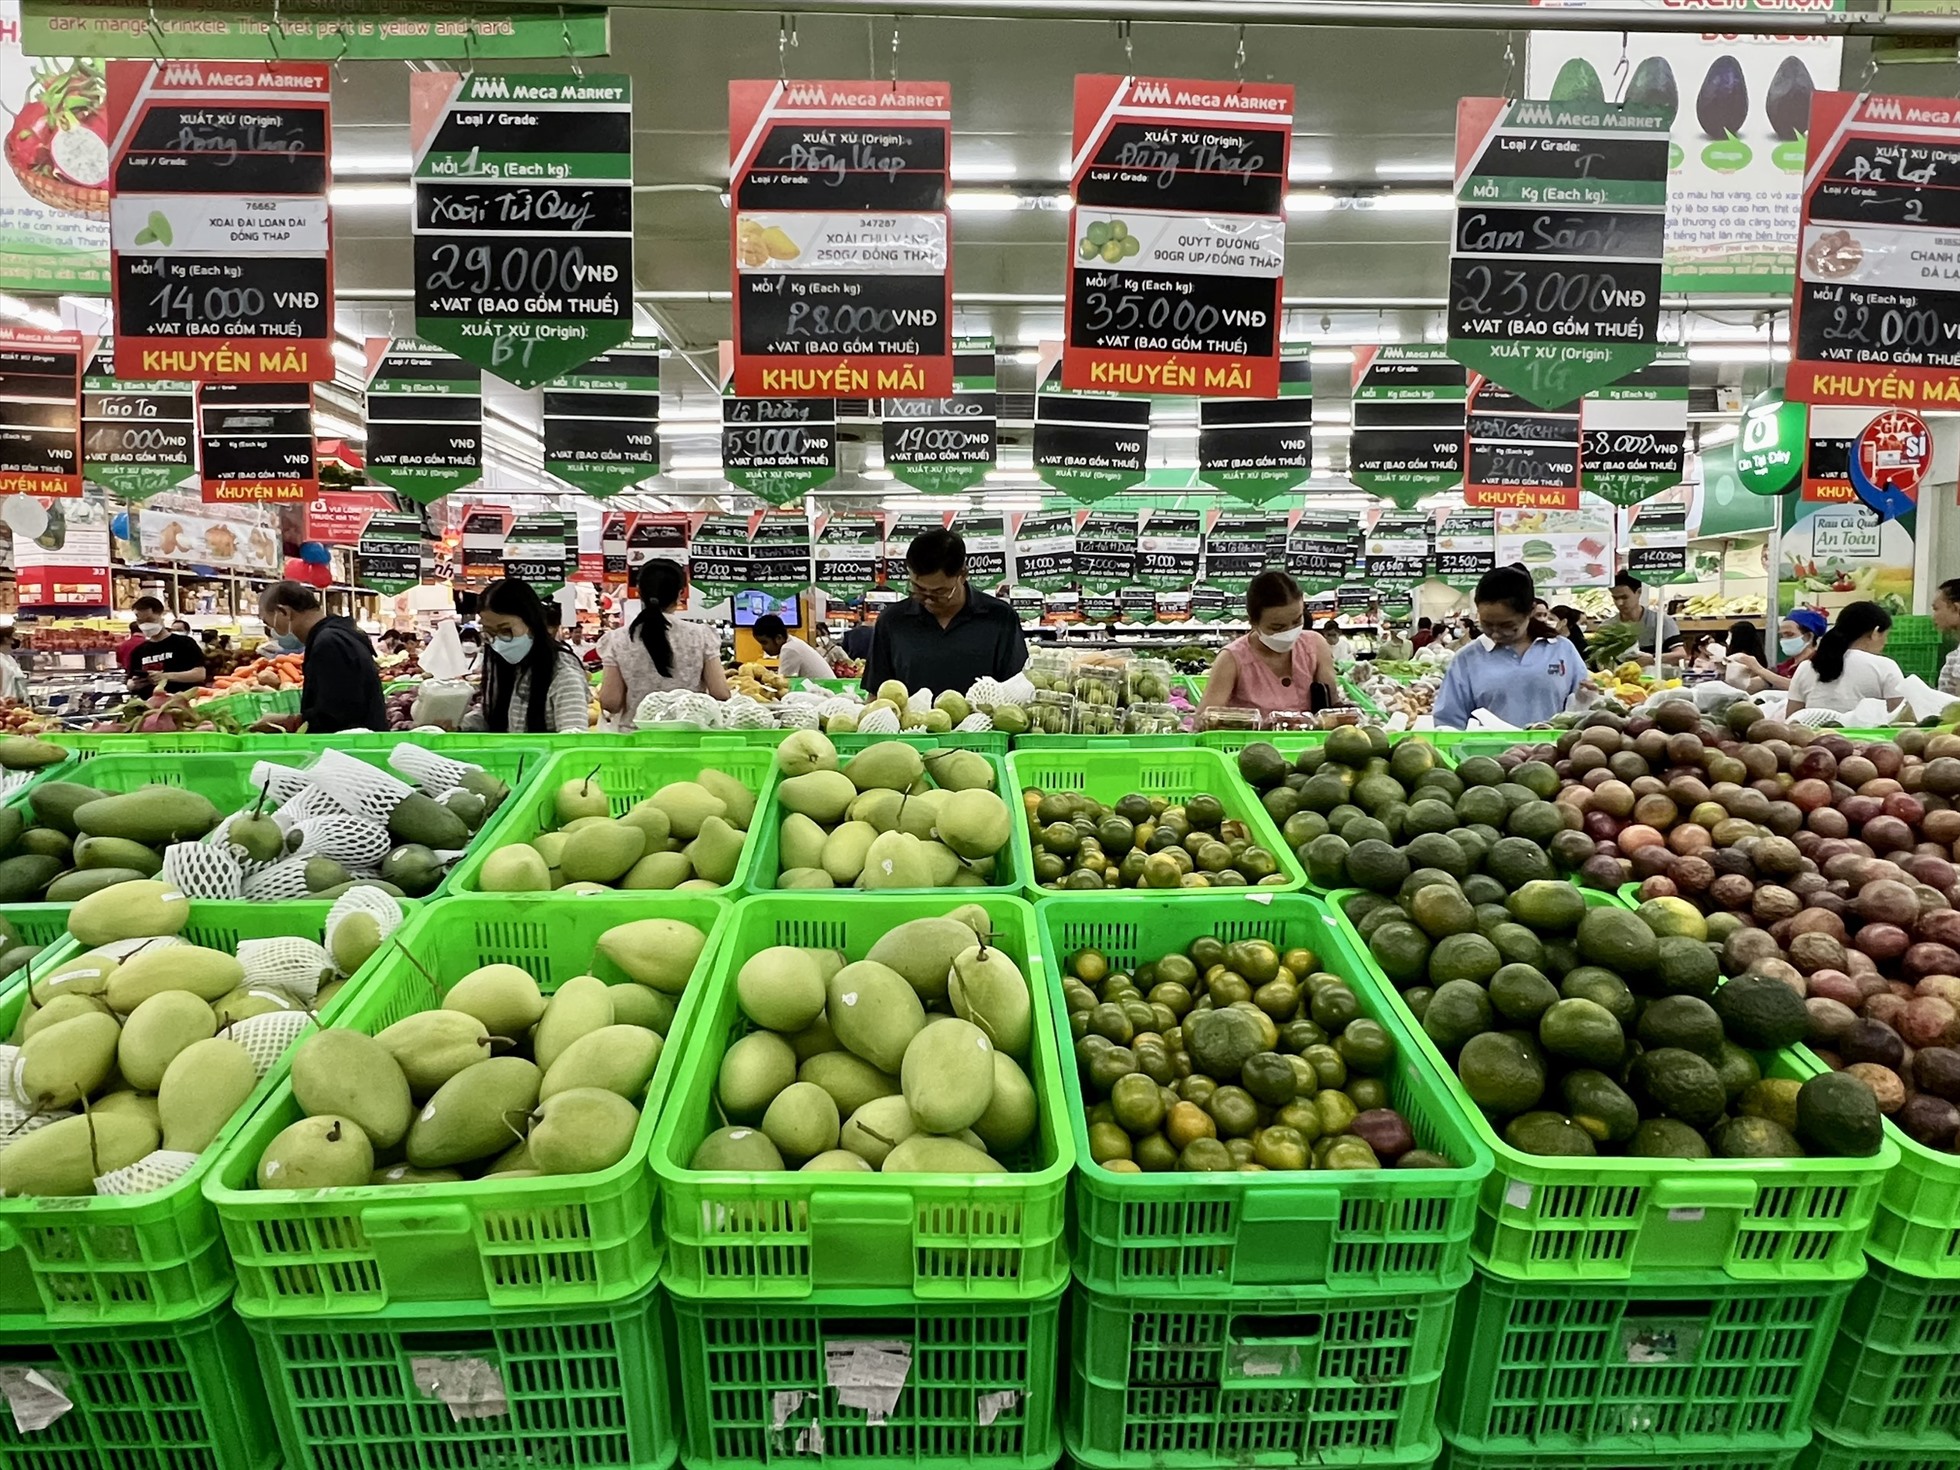 Khách hàng tha hồ chọn mua các loại trái cây với mức giá chỉ từ 14.000 đồng/kg.